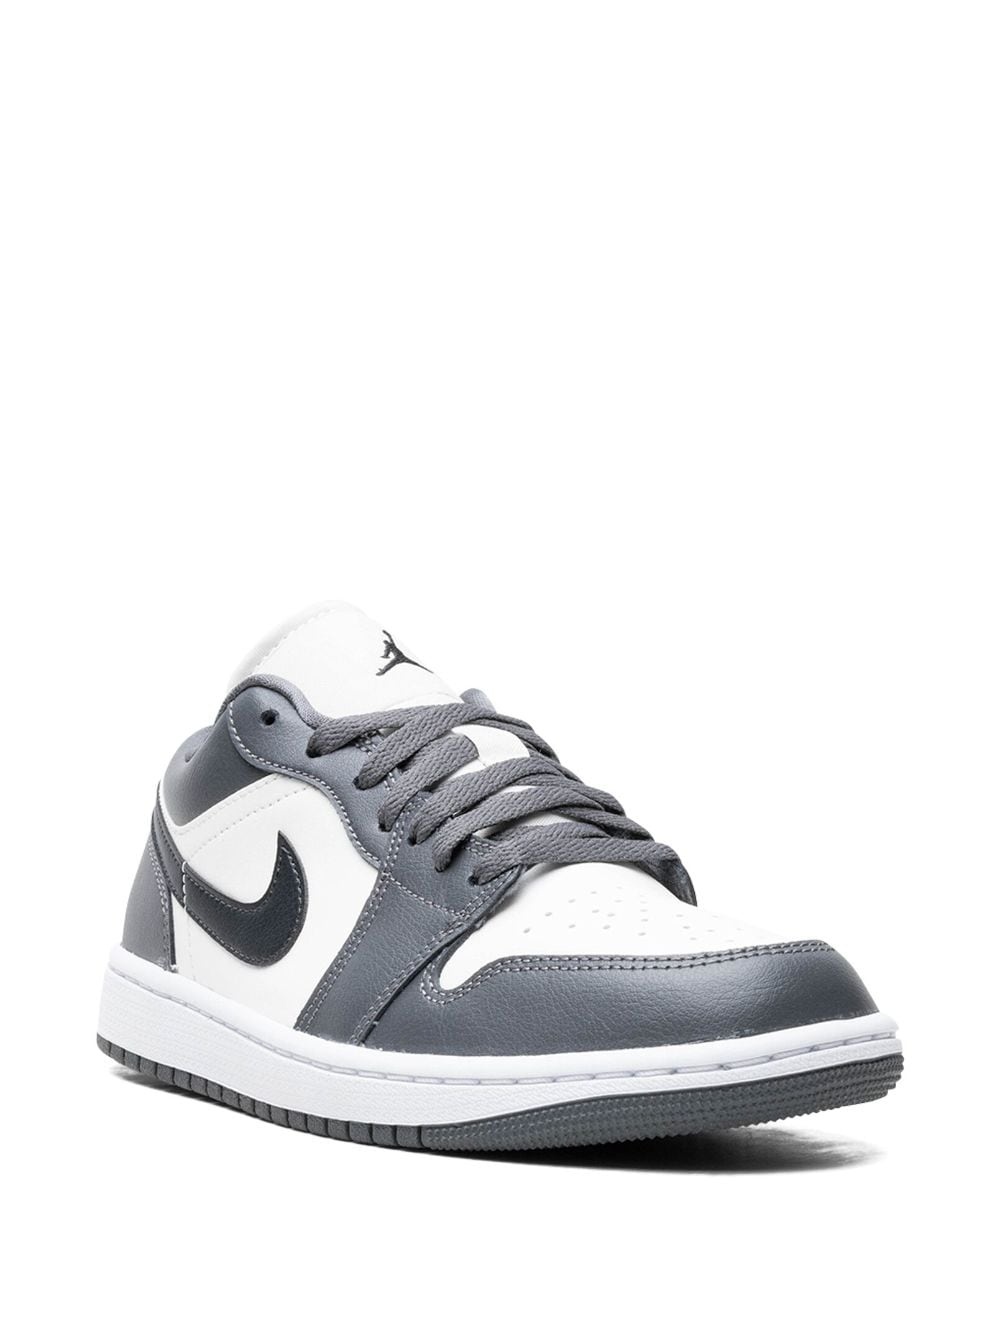 Air Jordan 1 "Dark Grey" sneakers - 2